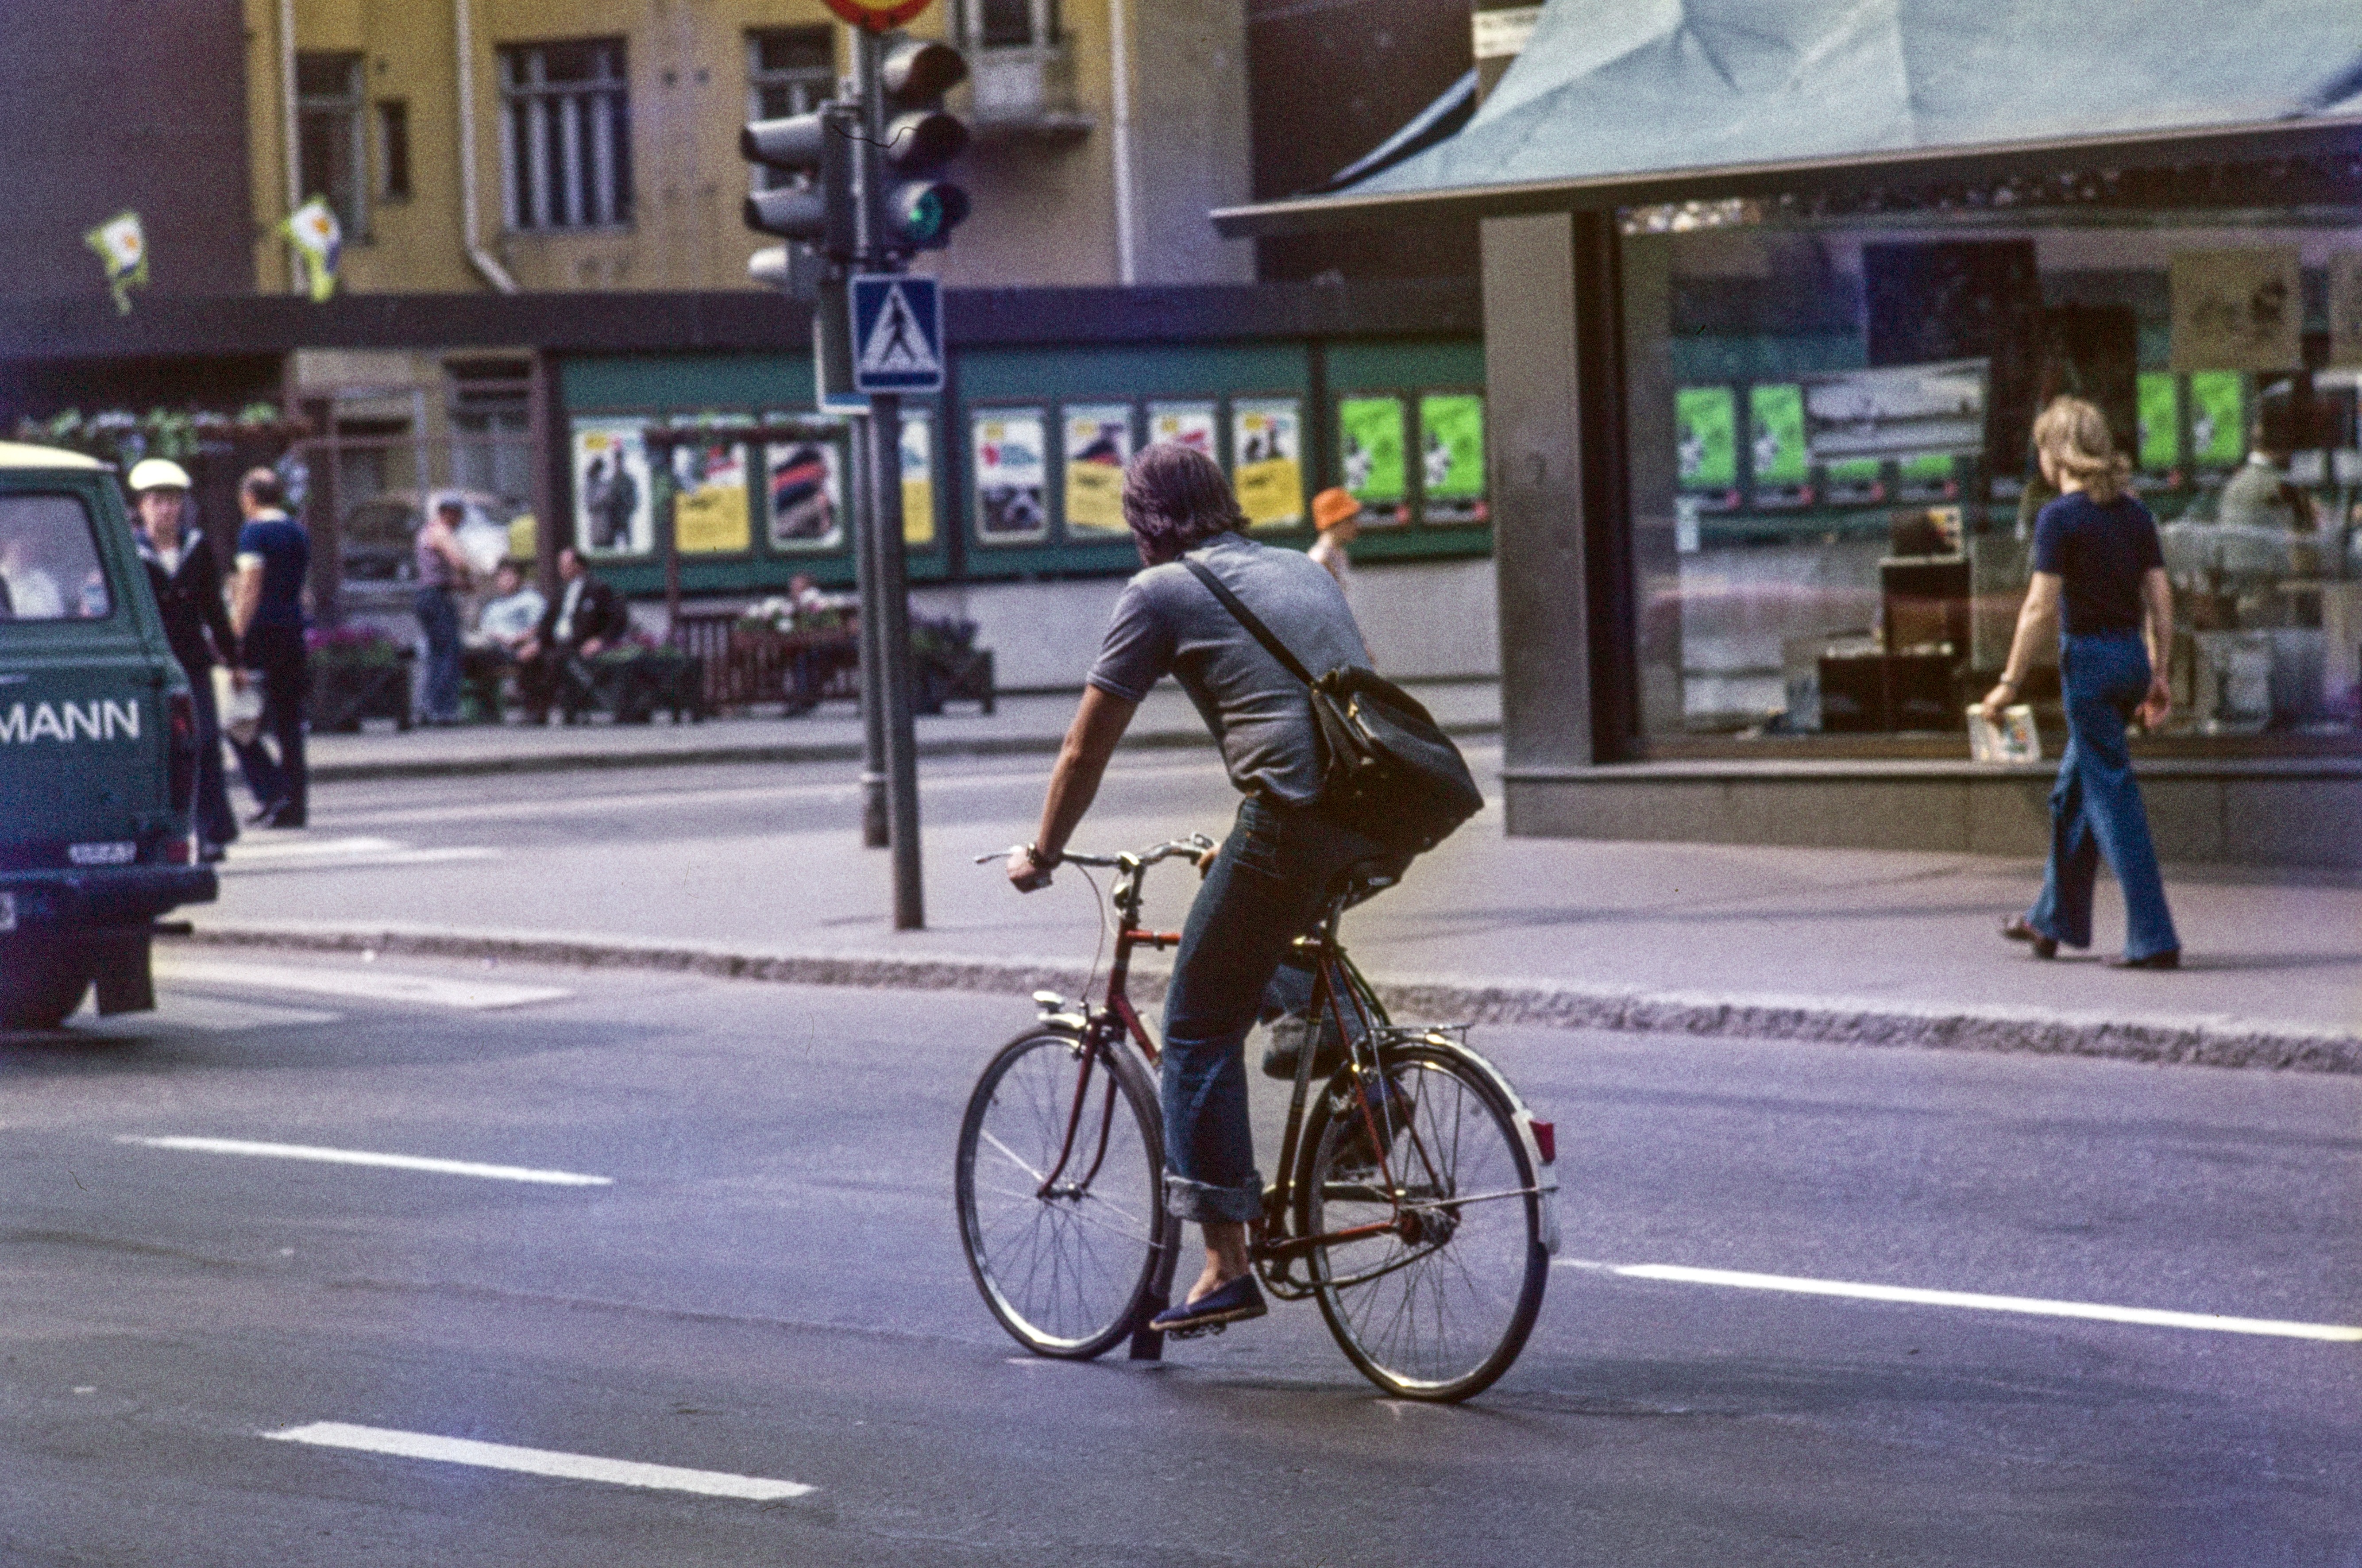 Polkupyöräilijä Pohjoisesplanadin ja Keskuskadun risteyksessä, oikeassa reunassa Akateemisen kirjakaupan näyteikkuna, taustalla Stockmann.